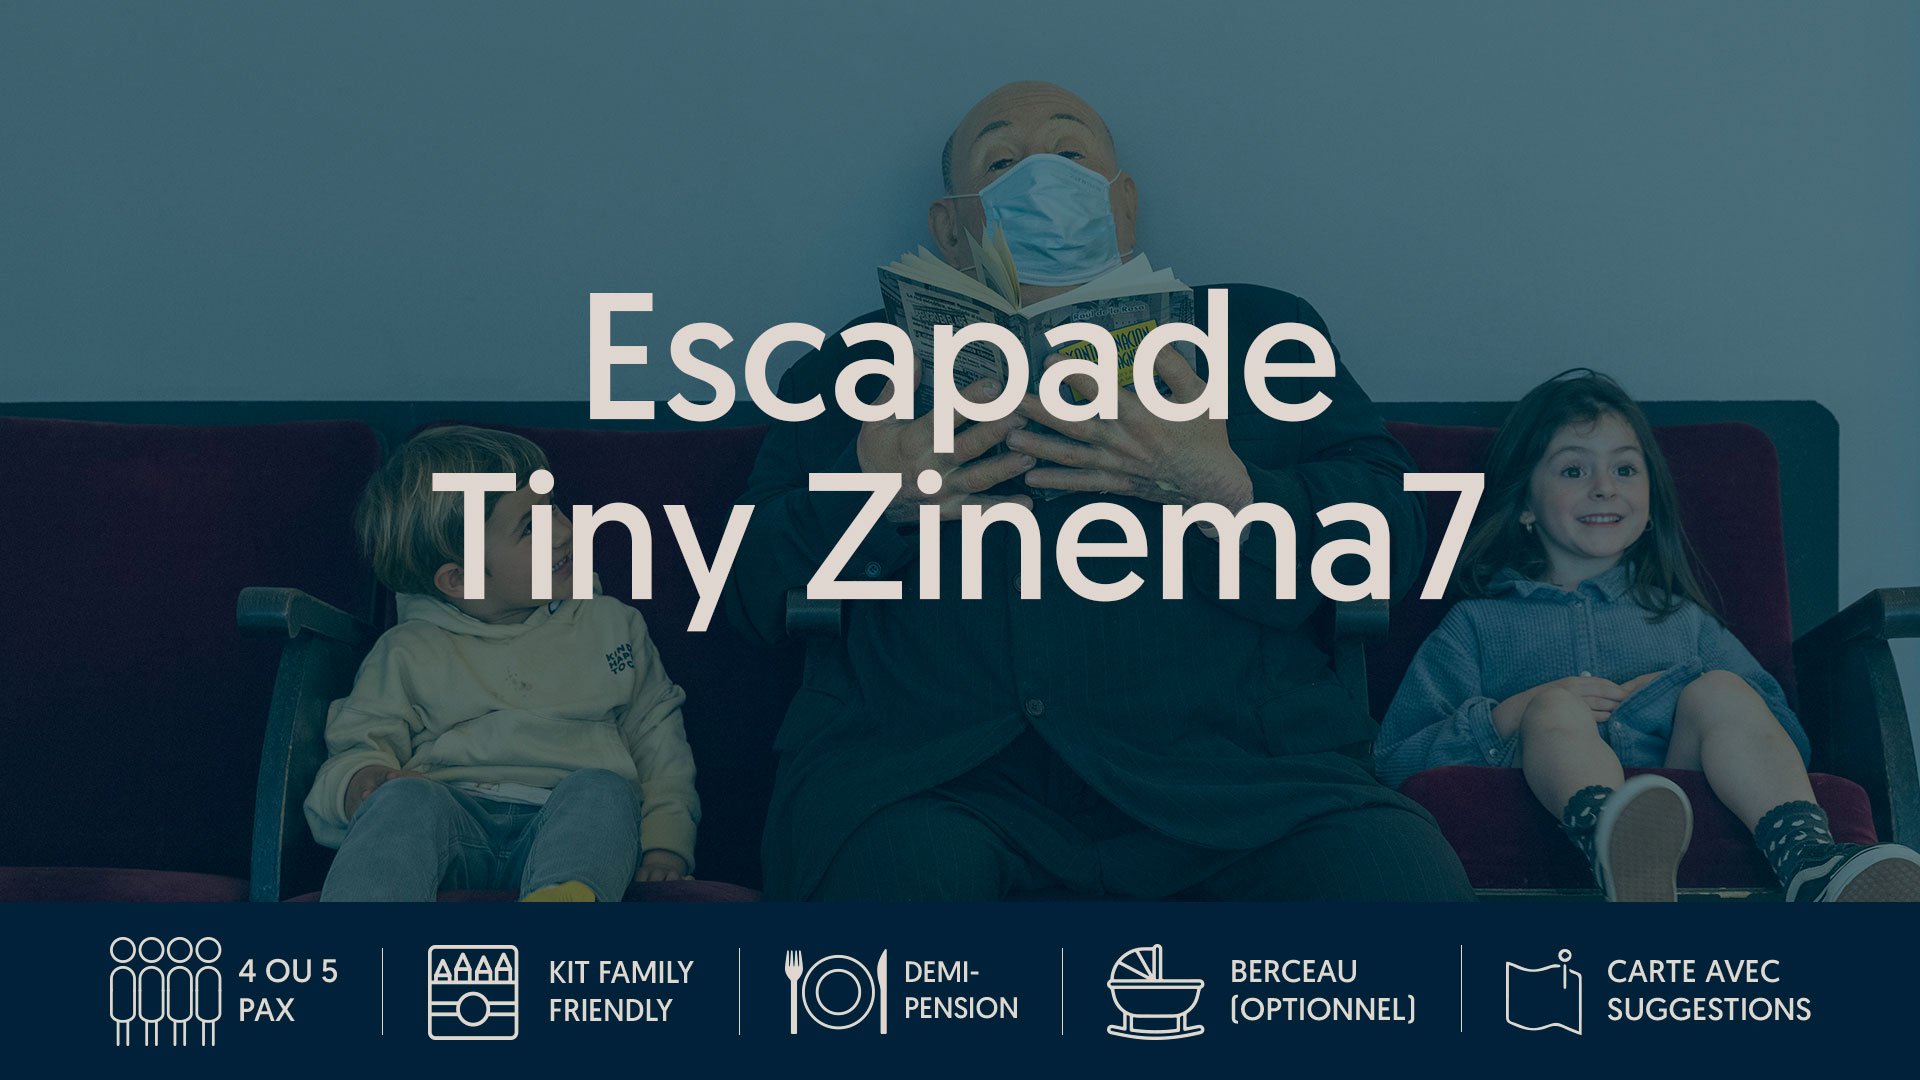 Escapade Tiny Zinema7 : Nous y sommes tous conviés, en famille.